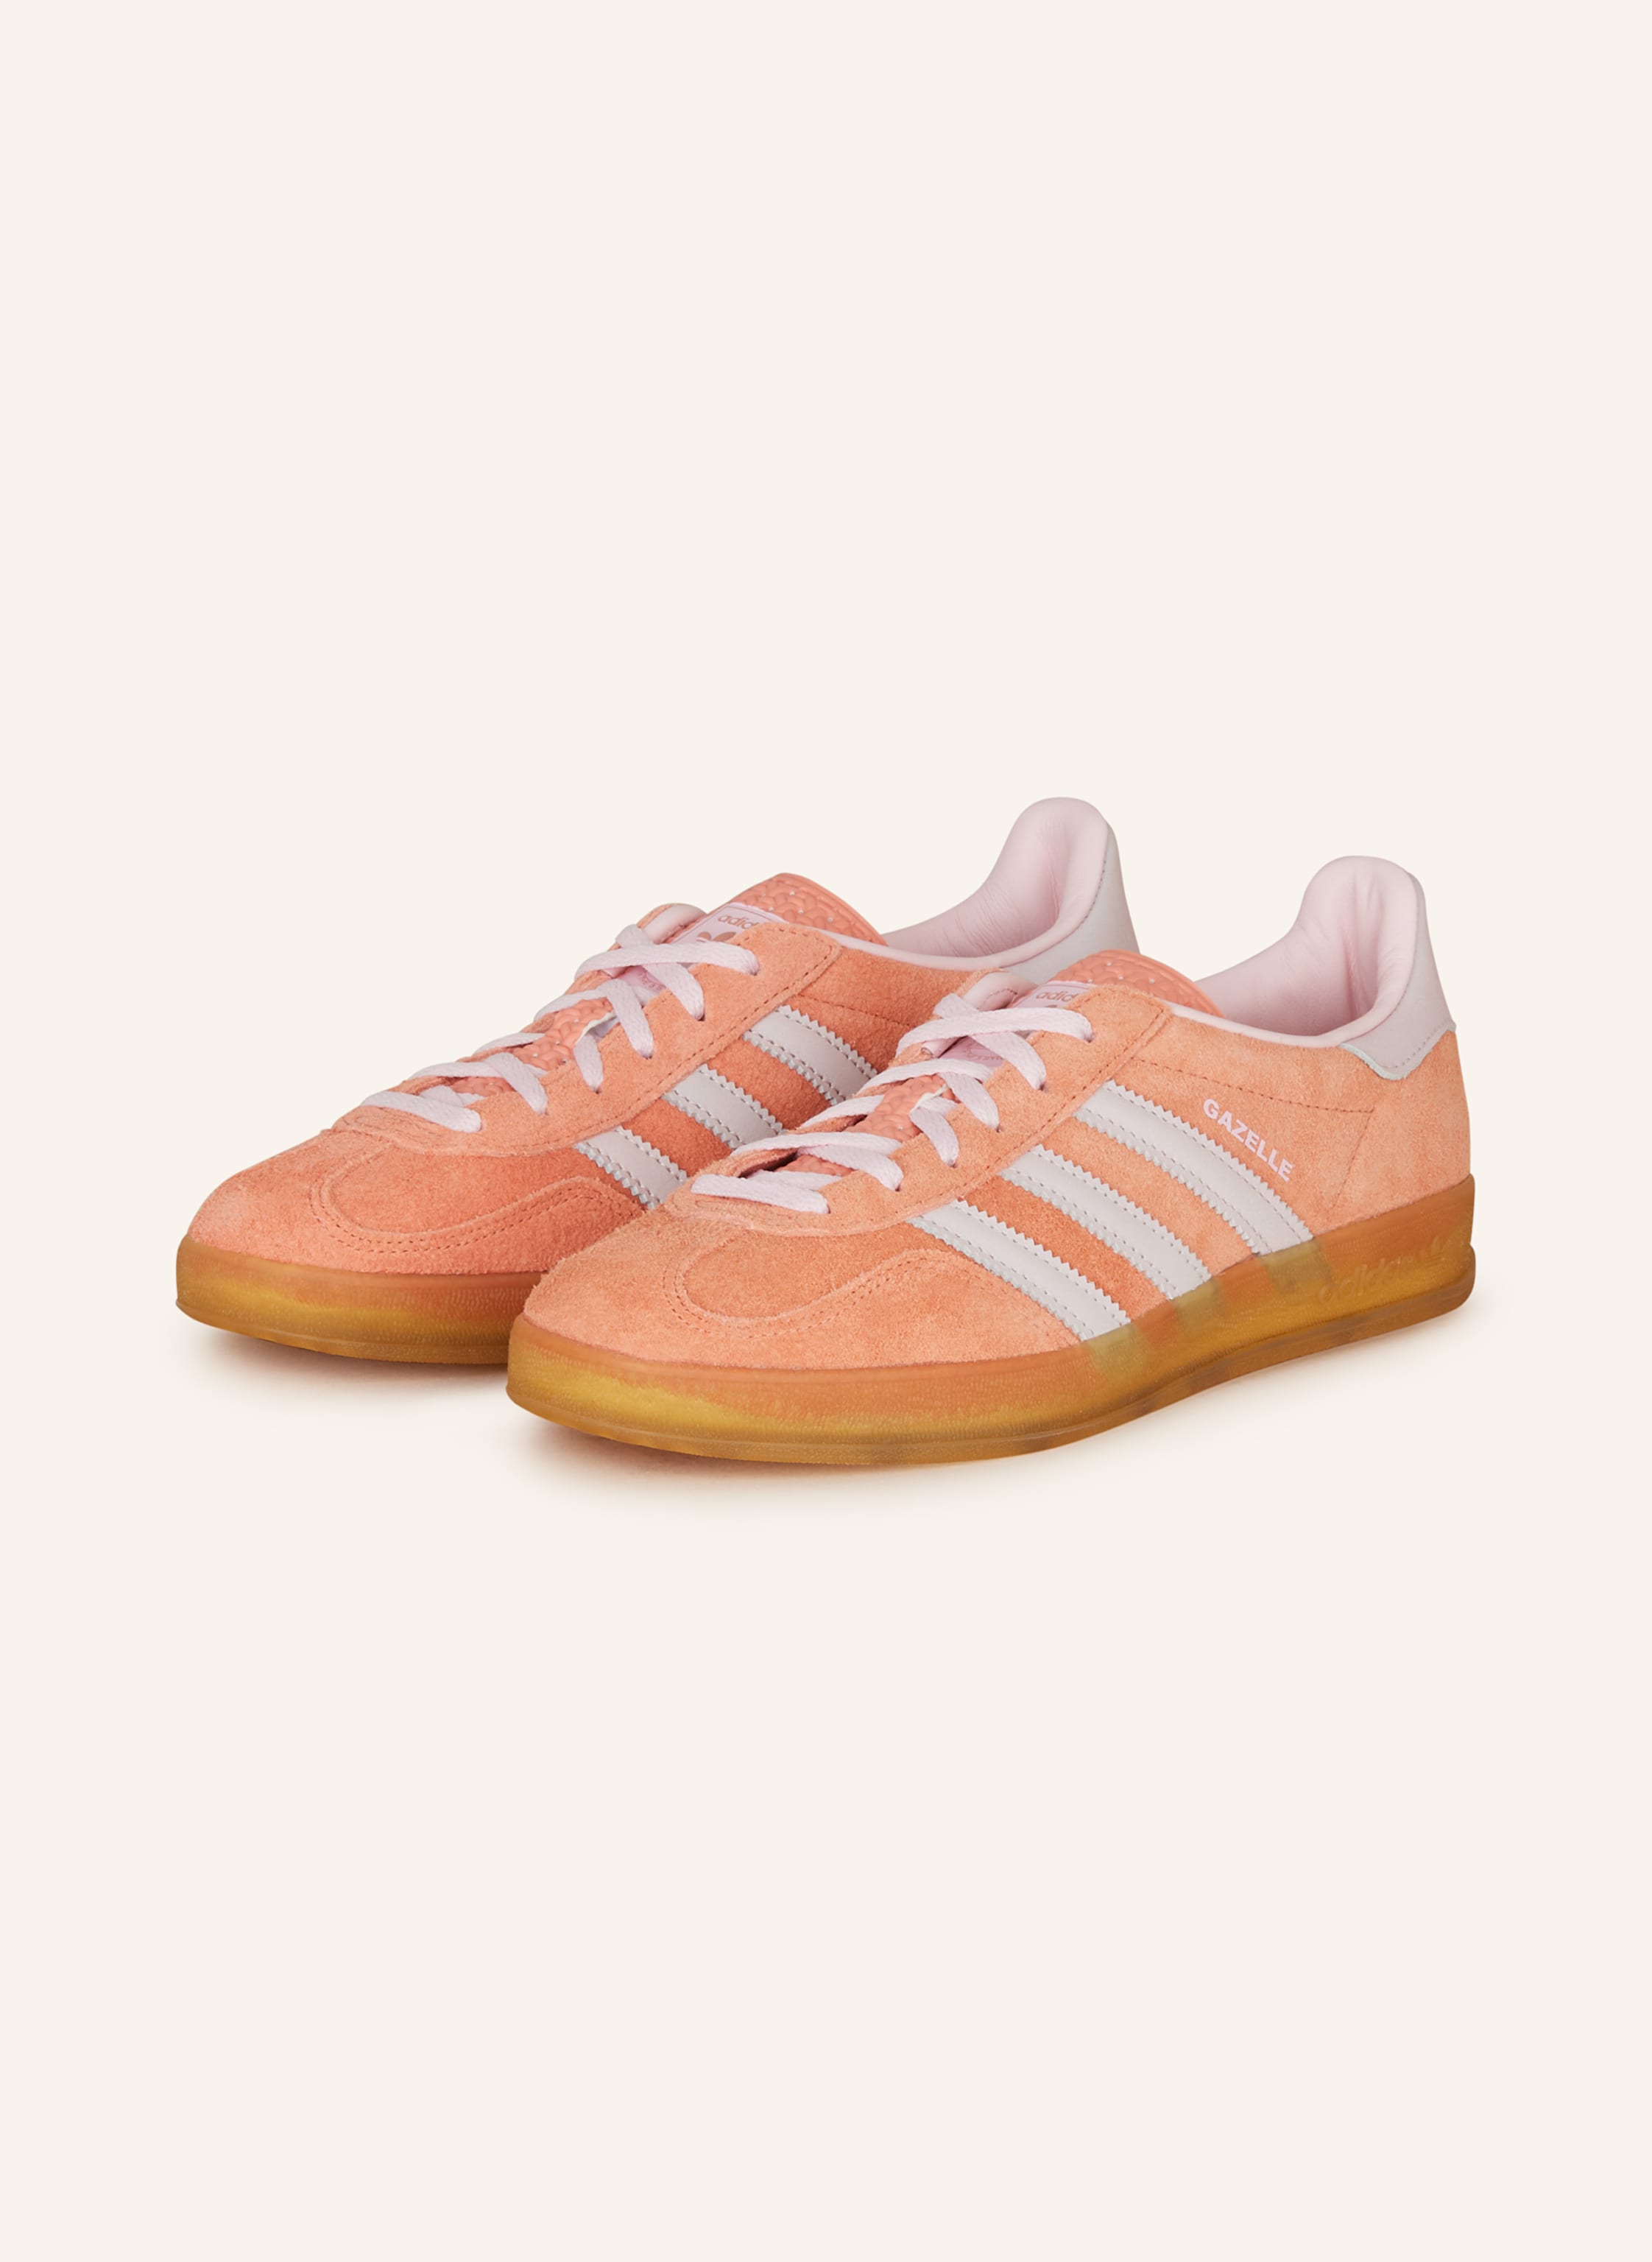 adidas Originals Sneaker rosa/ INDOOR helllila orange/ GAZELLE in